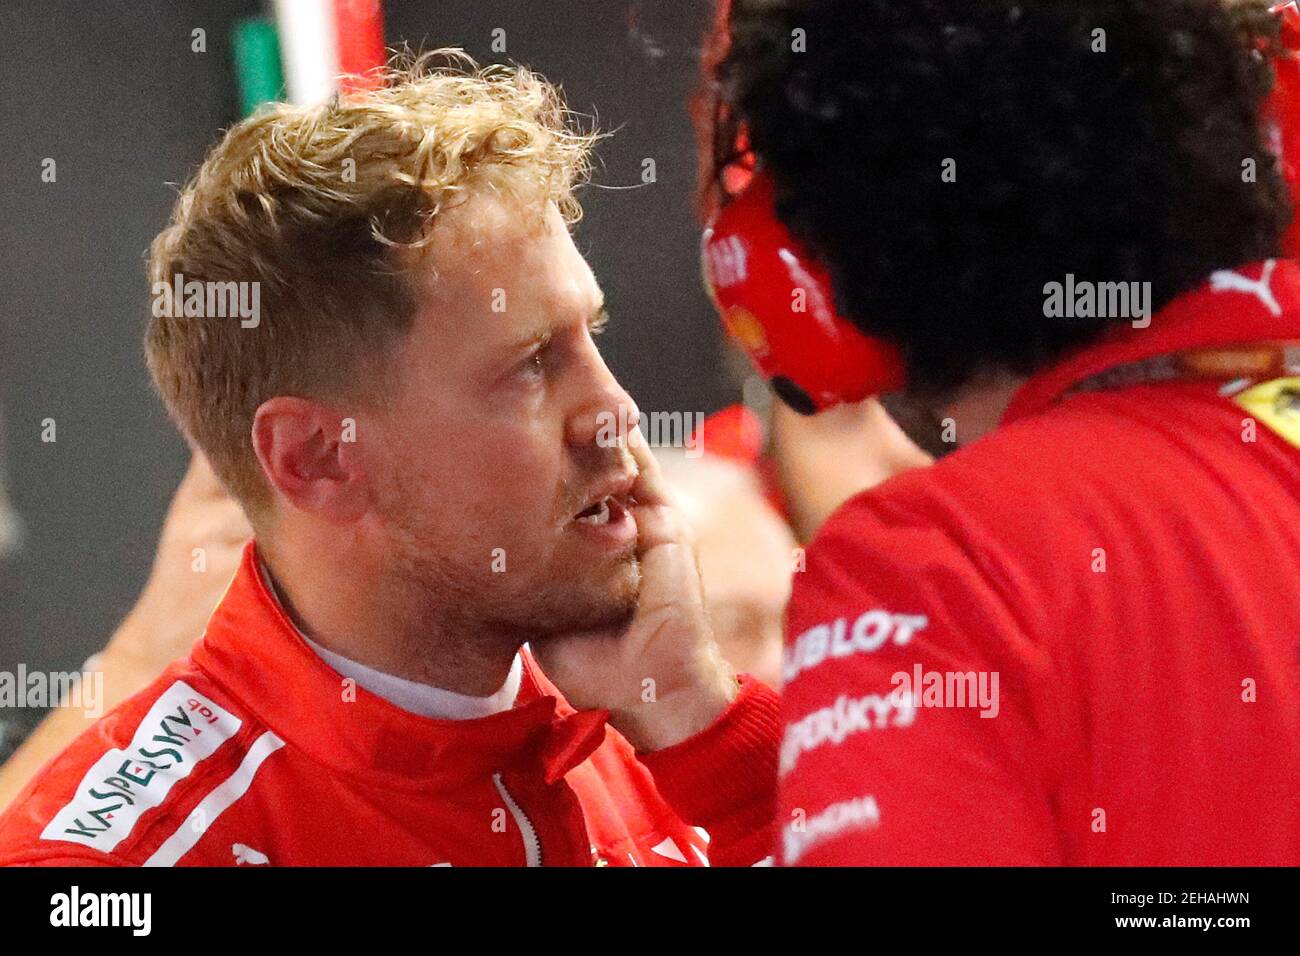 Formule 1 - Grand Prix japonais - circuit de Suzuka, Suzuka, Japon - 5 octobre 2018 Sebastian Vettel de Ferrari après la pratique REUTERS/Toru Hanai Banque D'Images